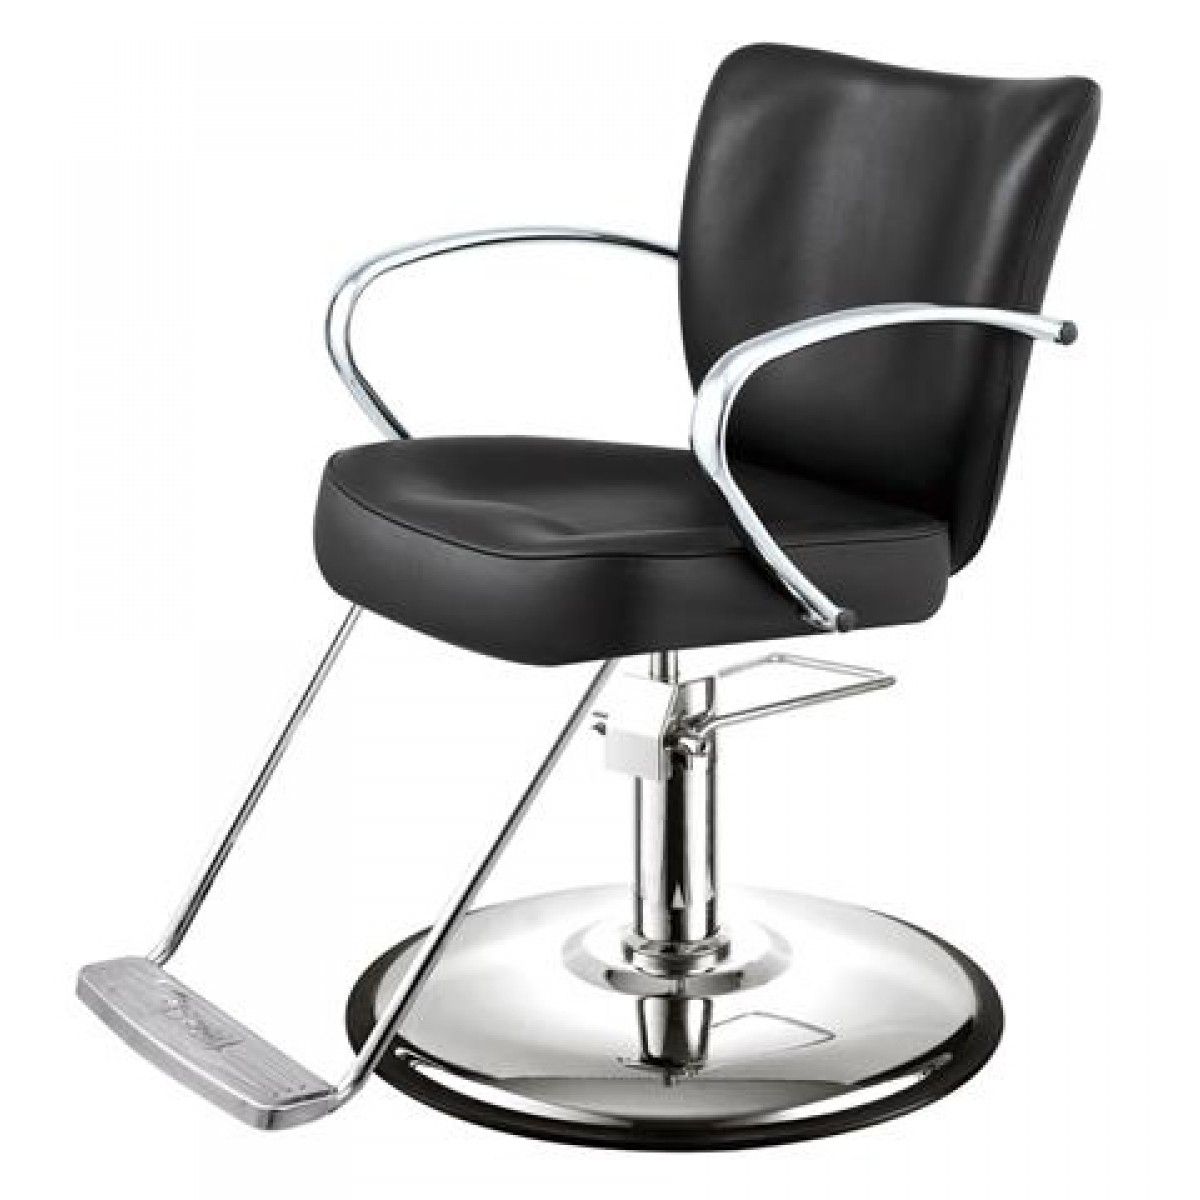 White Hair Salon Chair | tunersread.com